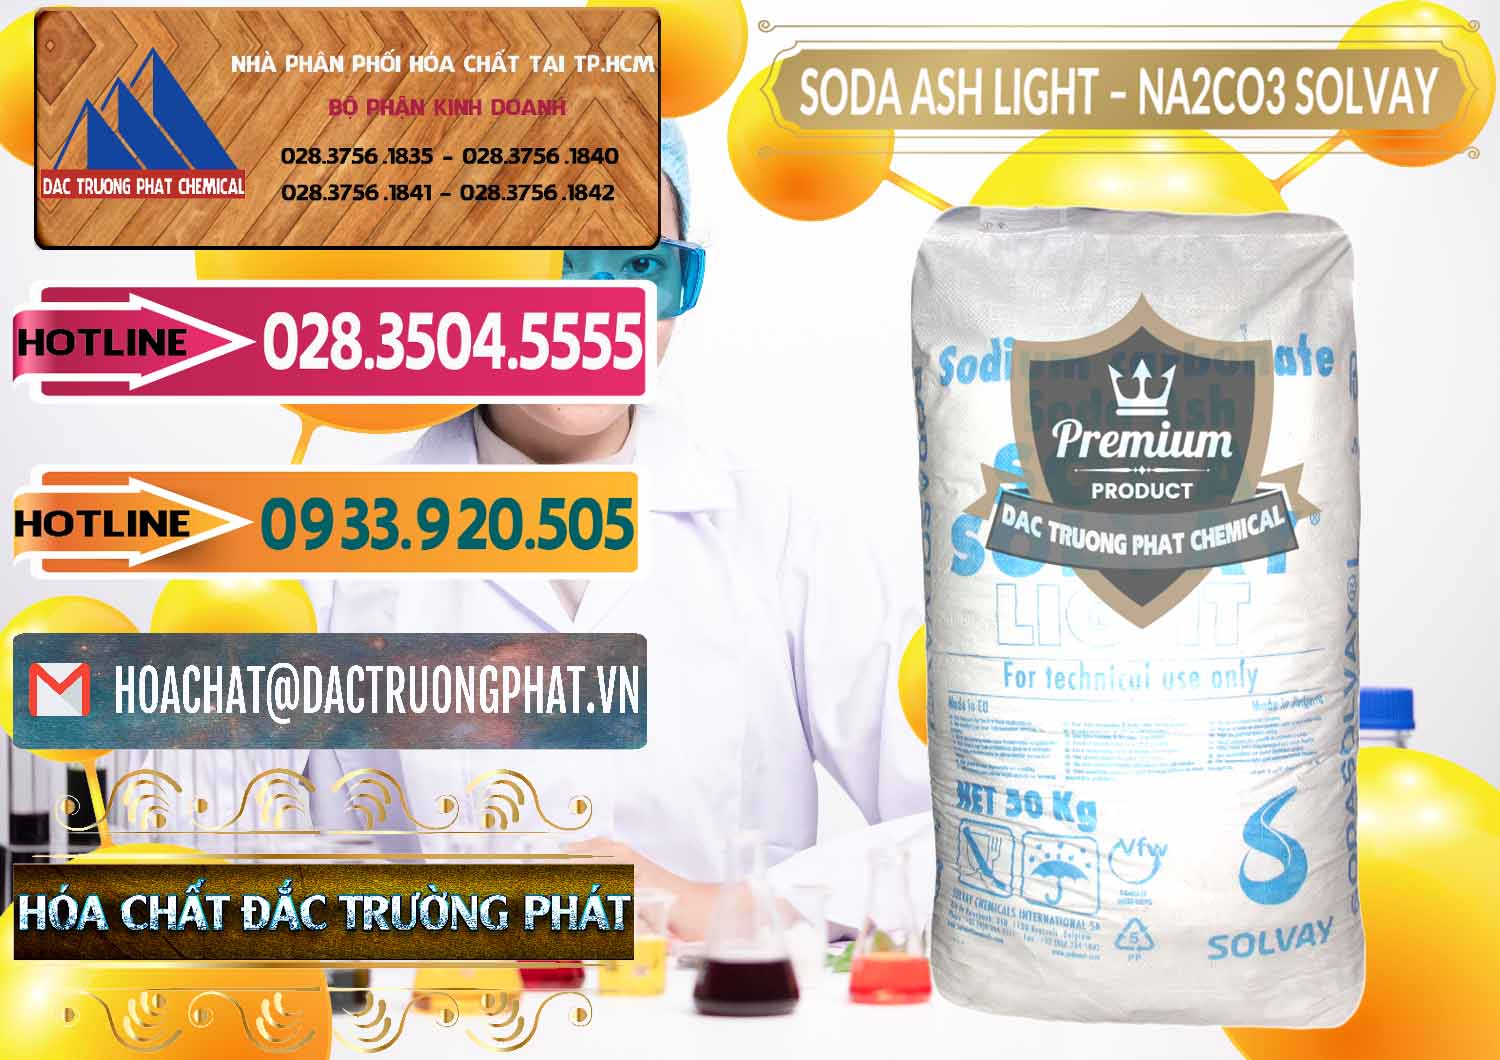 Chuyên bán & phân phối Soda Ash Light - NA2CO3 Solvay Bulgaria - 0126 - Nơi chuyên nhập khẩu - phân phối hóa chất tại TP.HCM - dactruongphat.vn